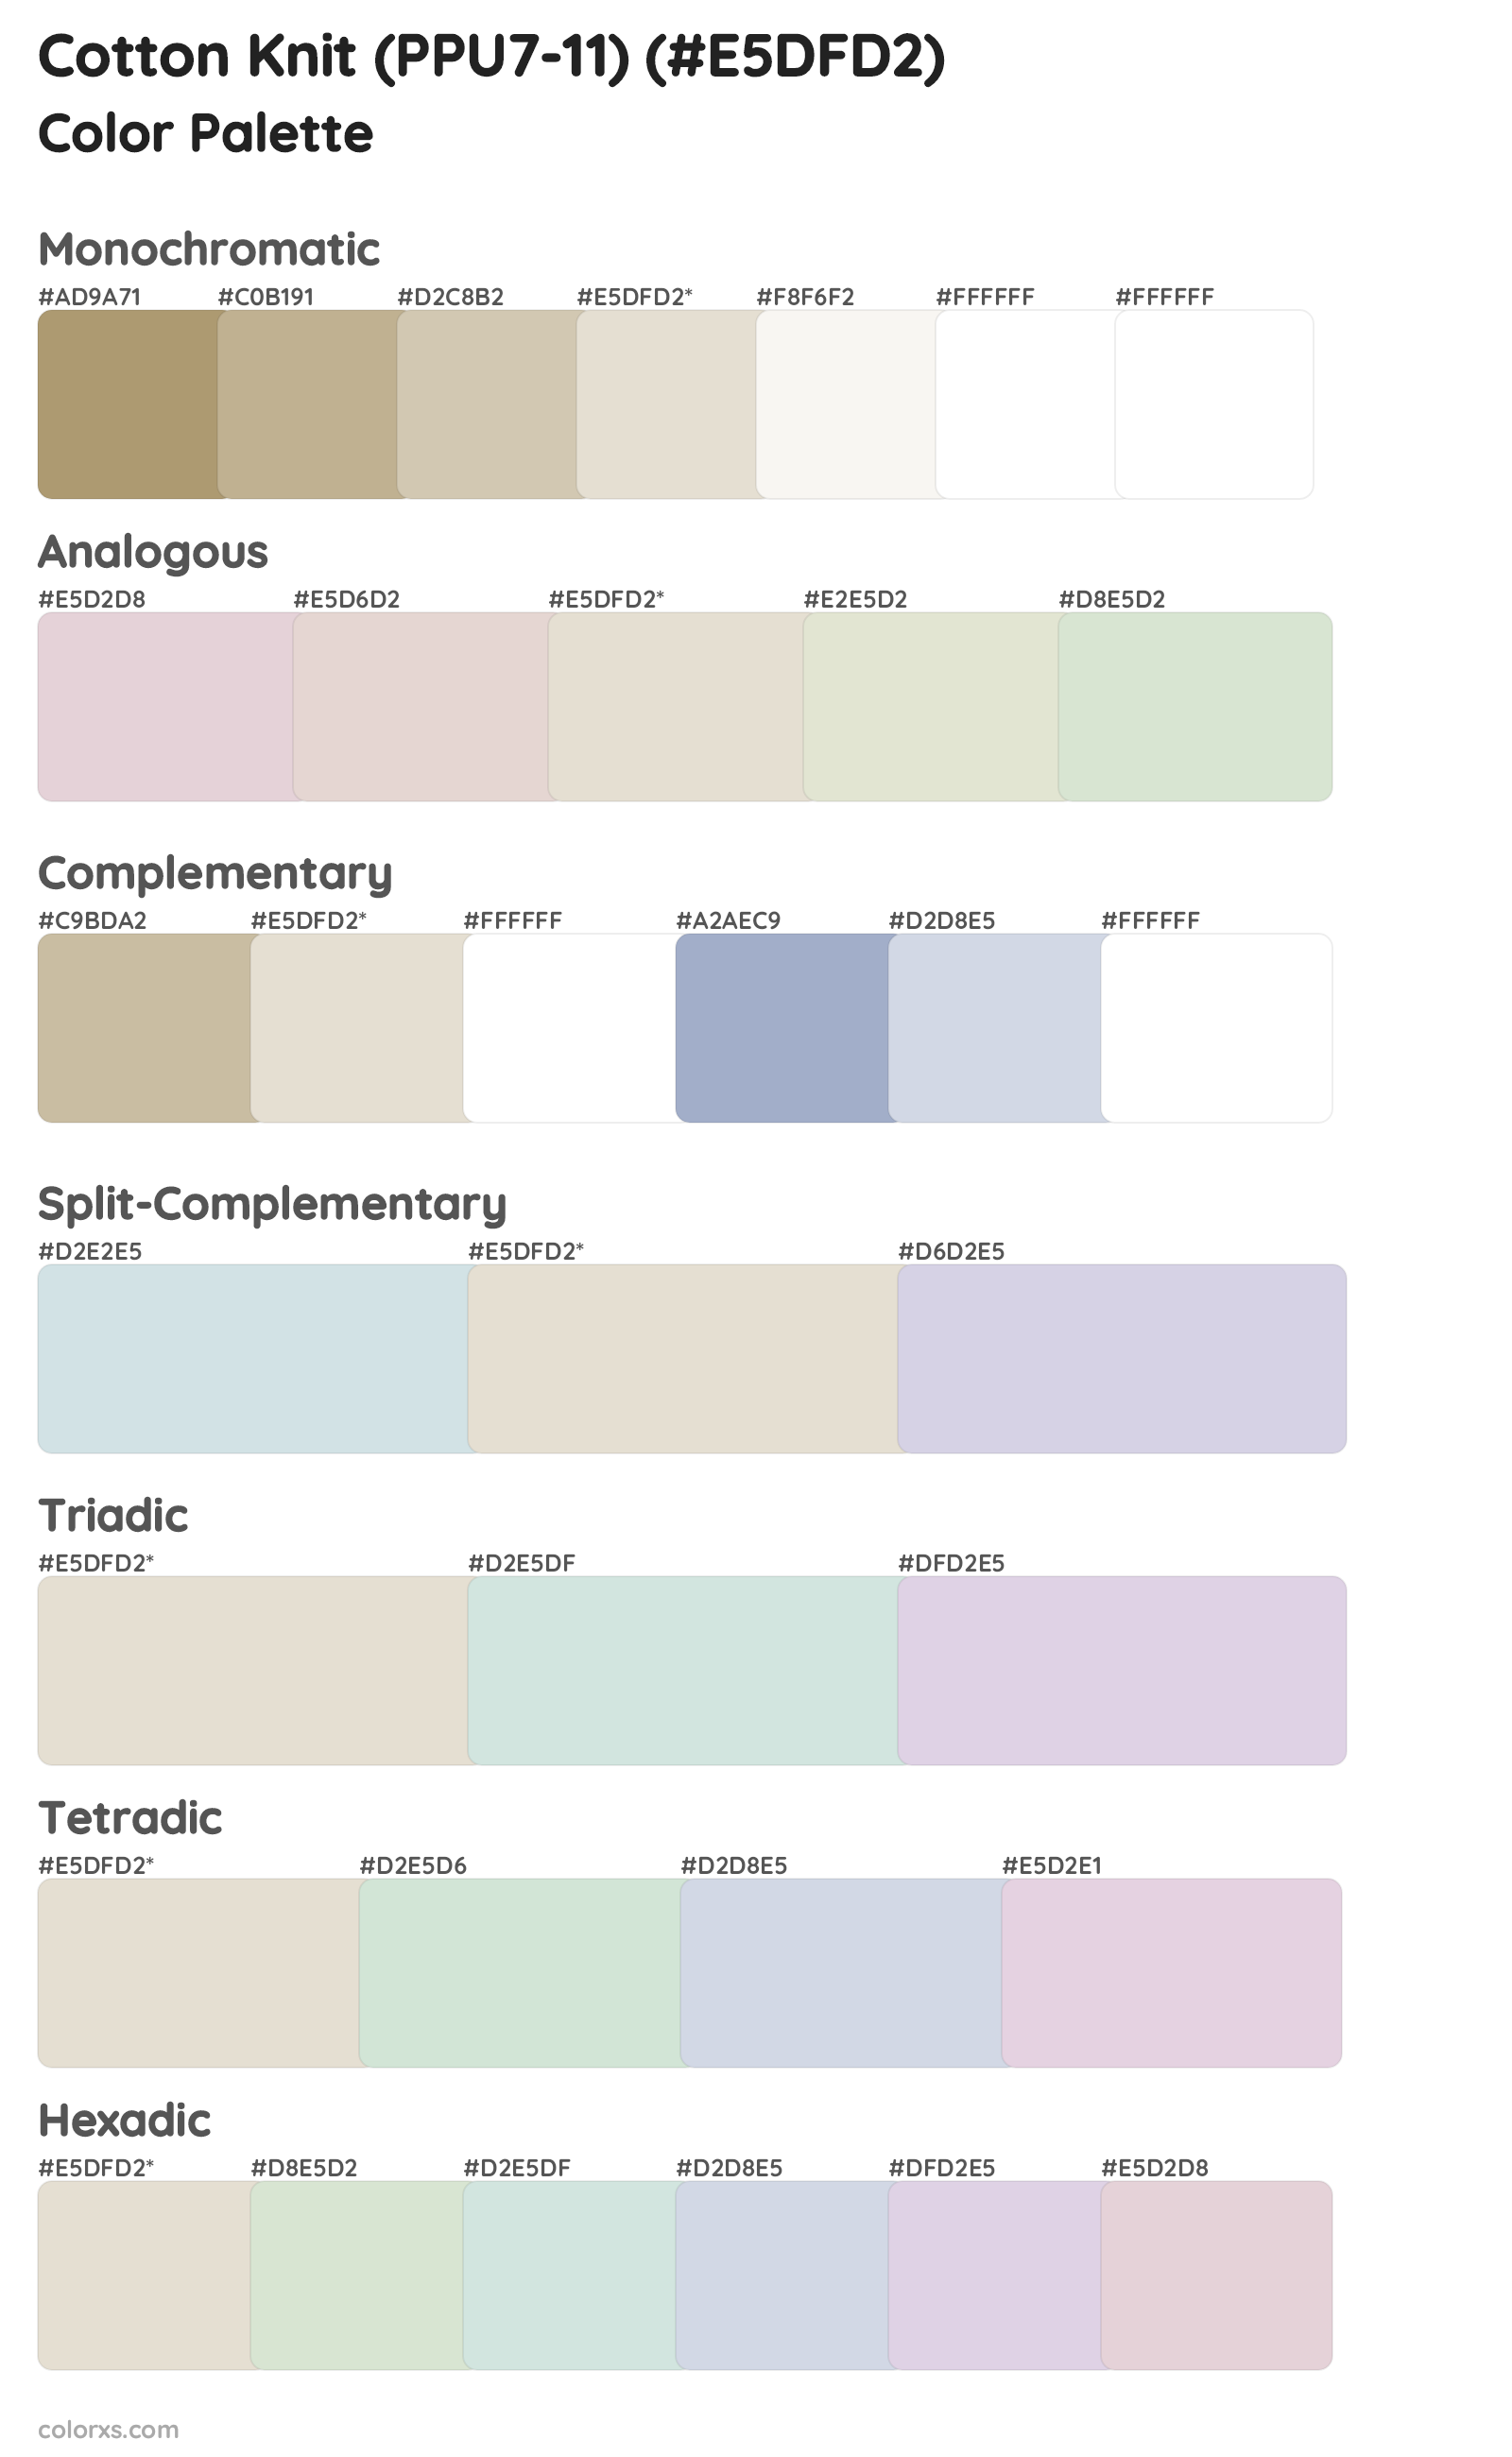 Cotton Knit (PPU7-11) Color Scheme Palettes